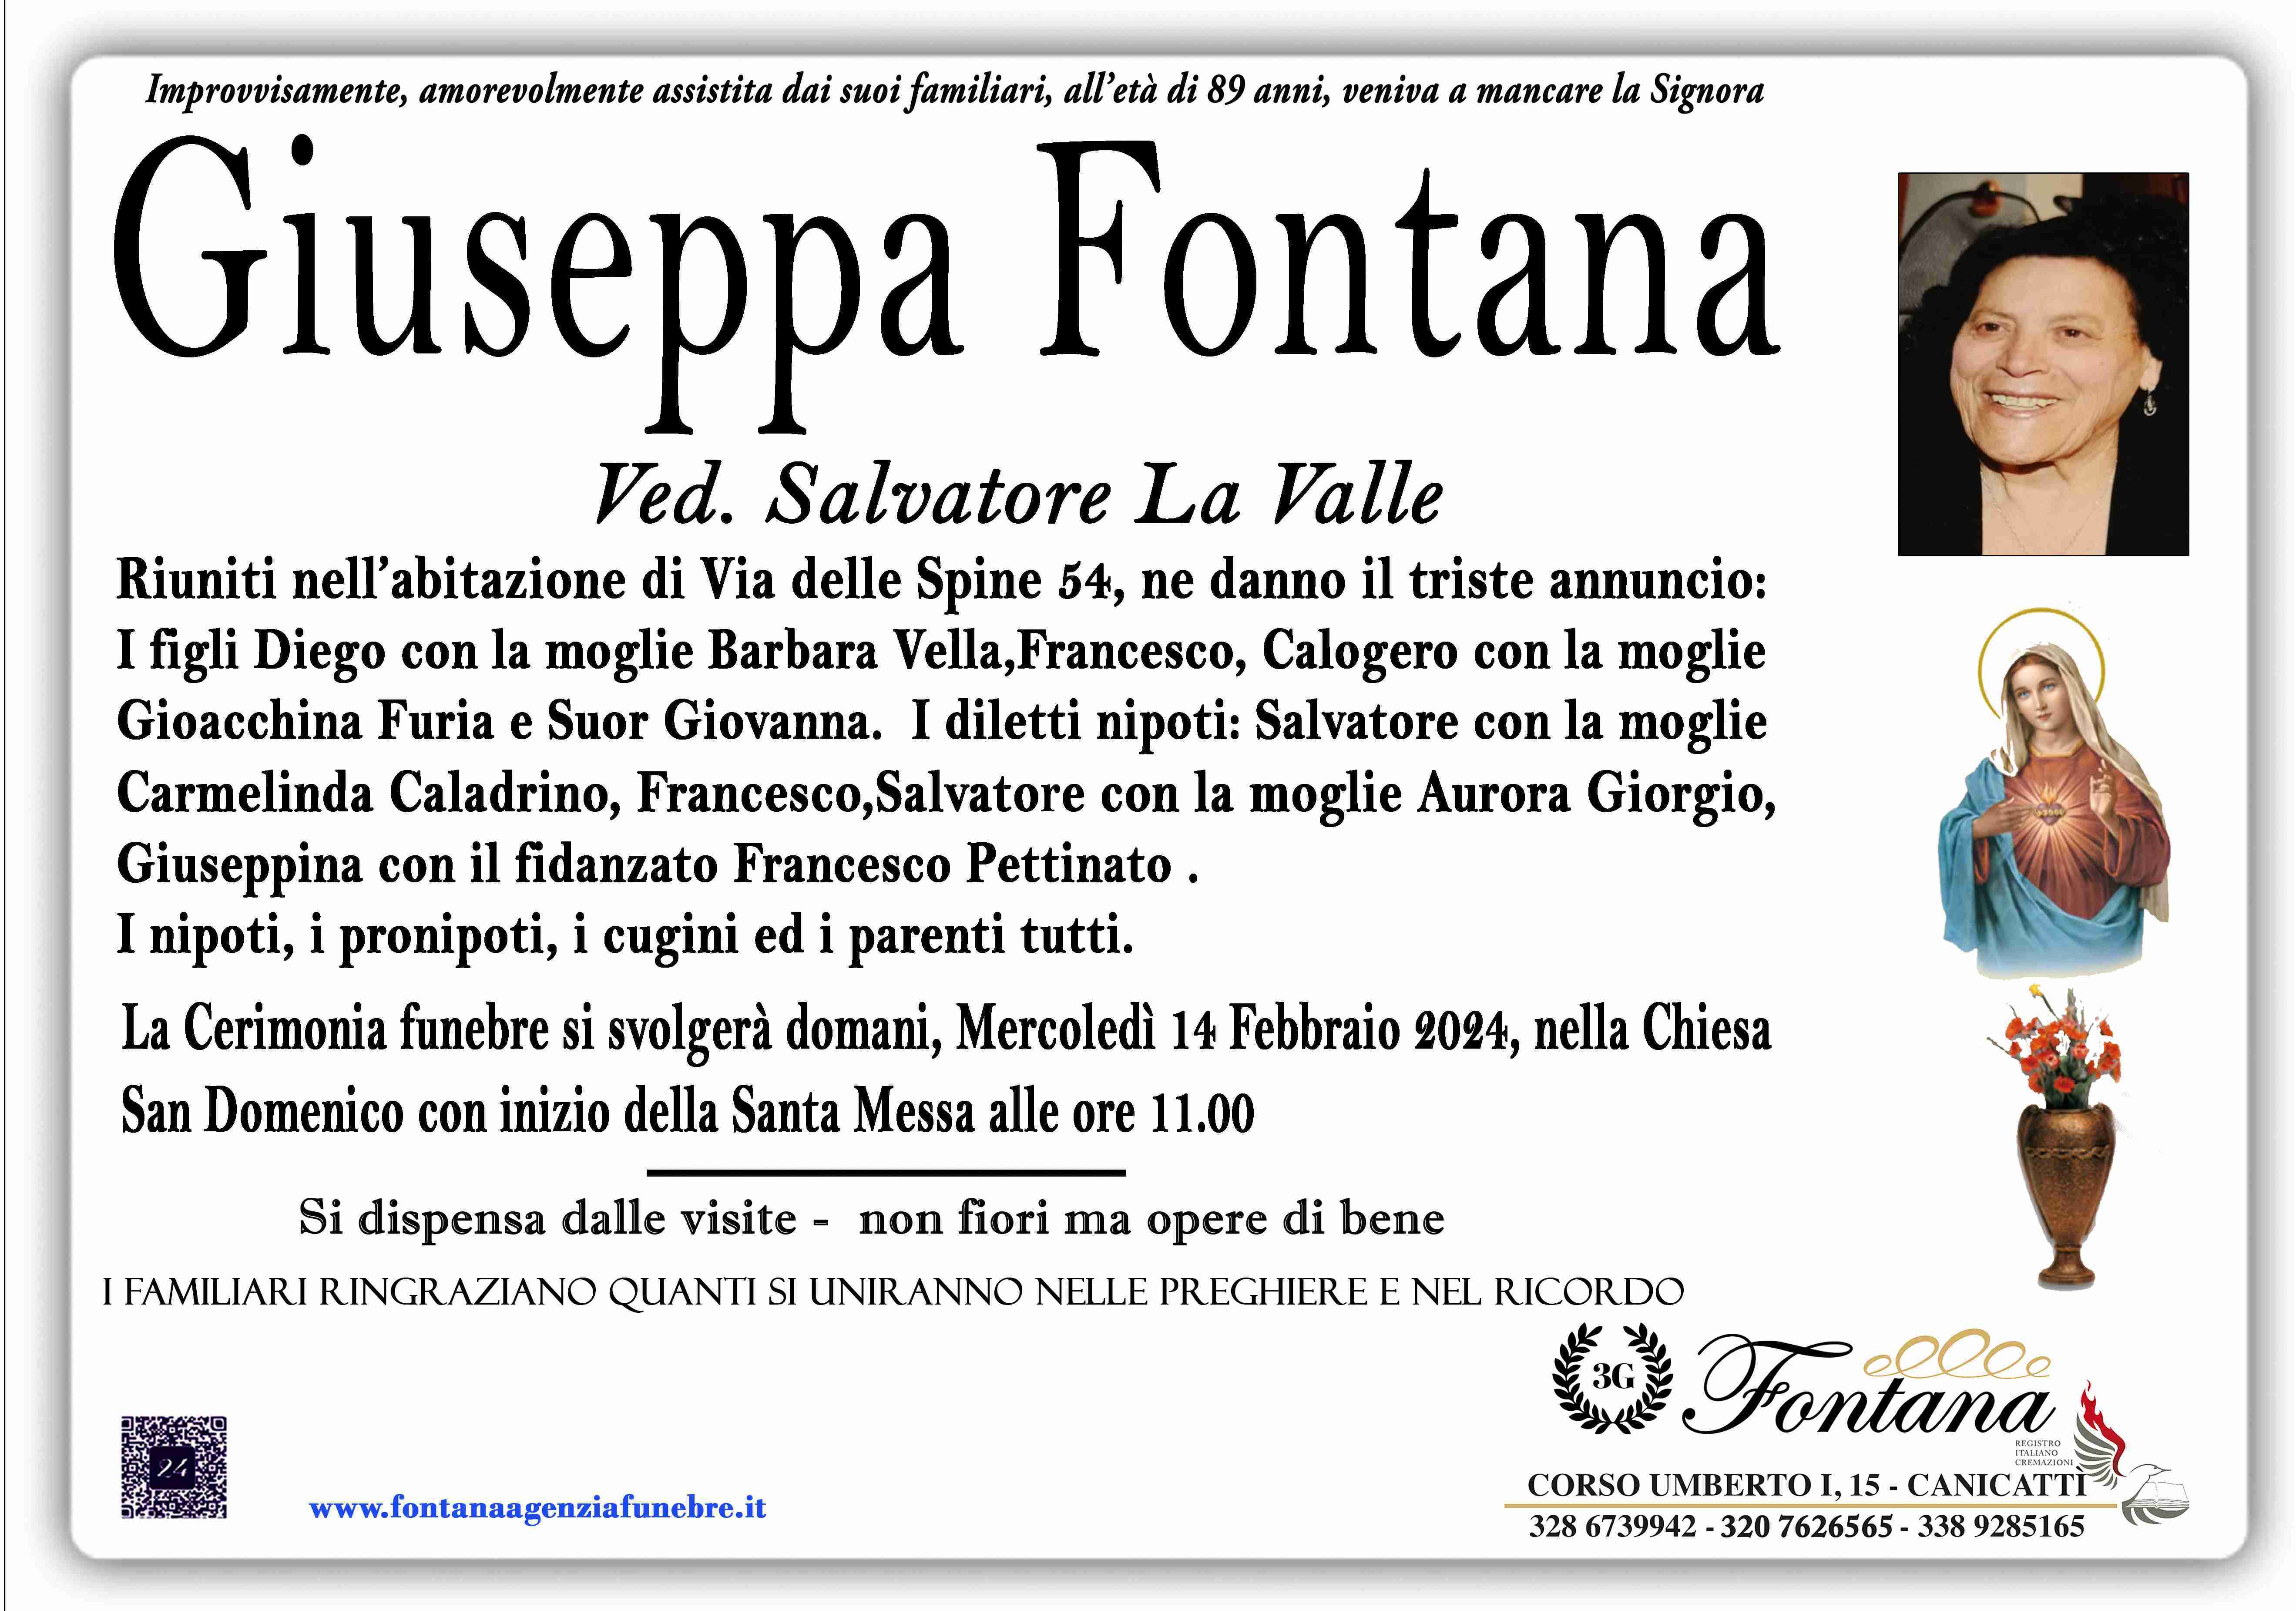 Giuseppa Fontana